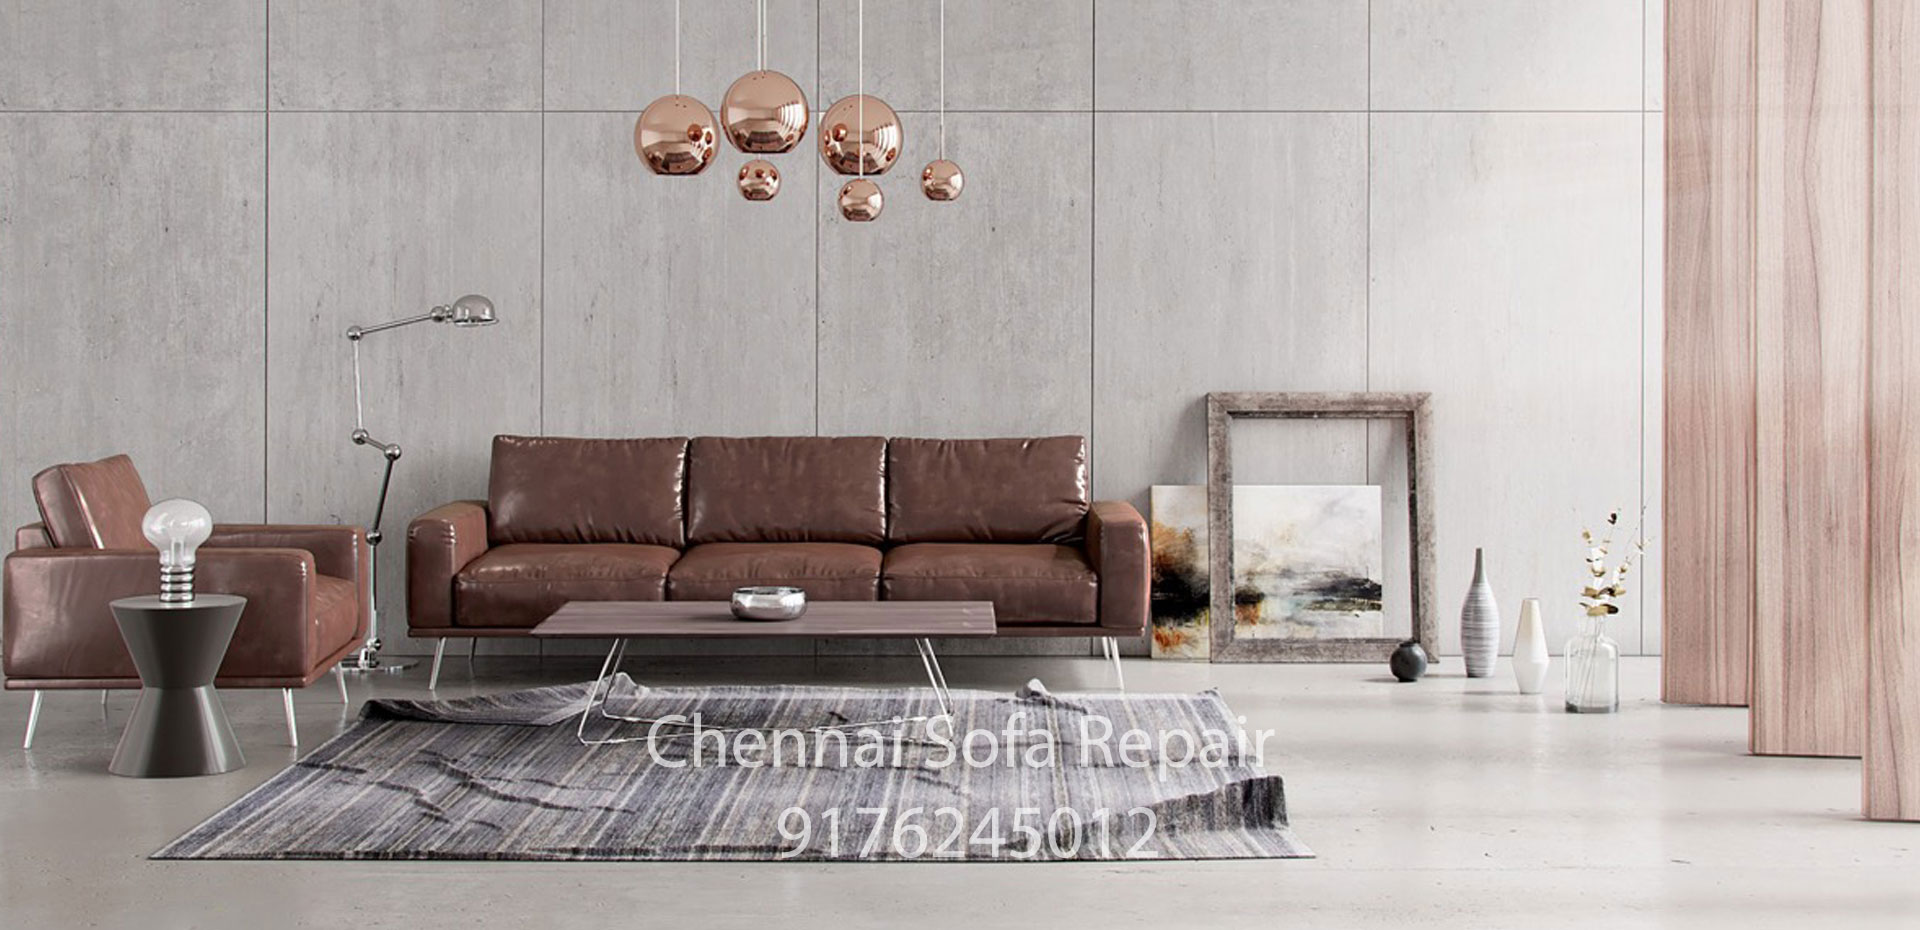 sofa renovation BesantNagar Chennai